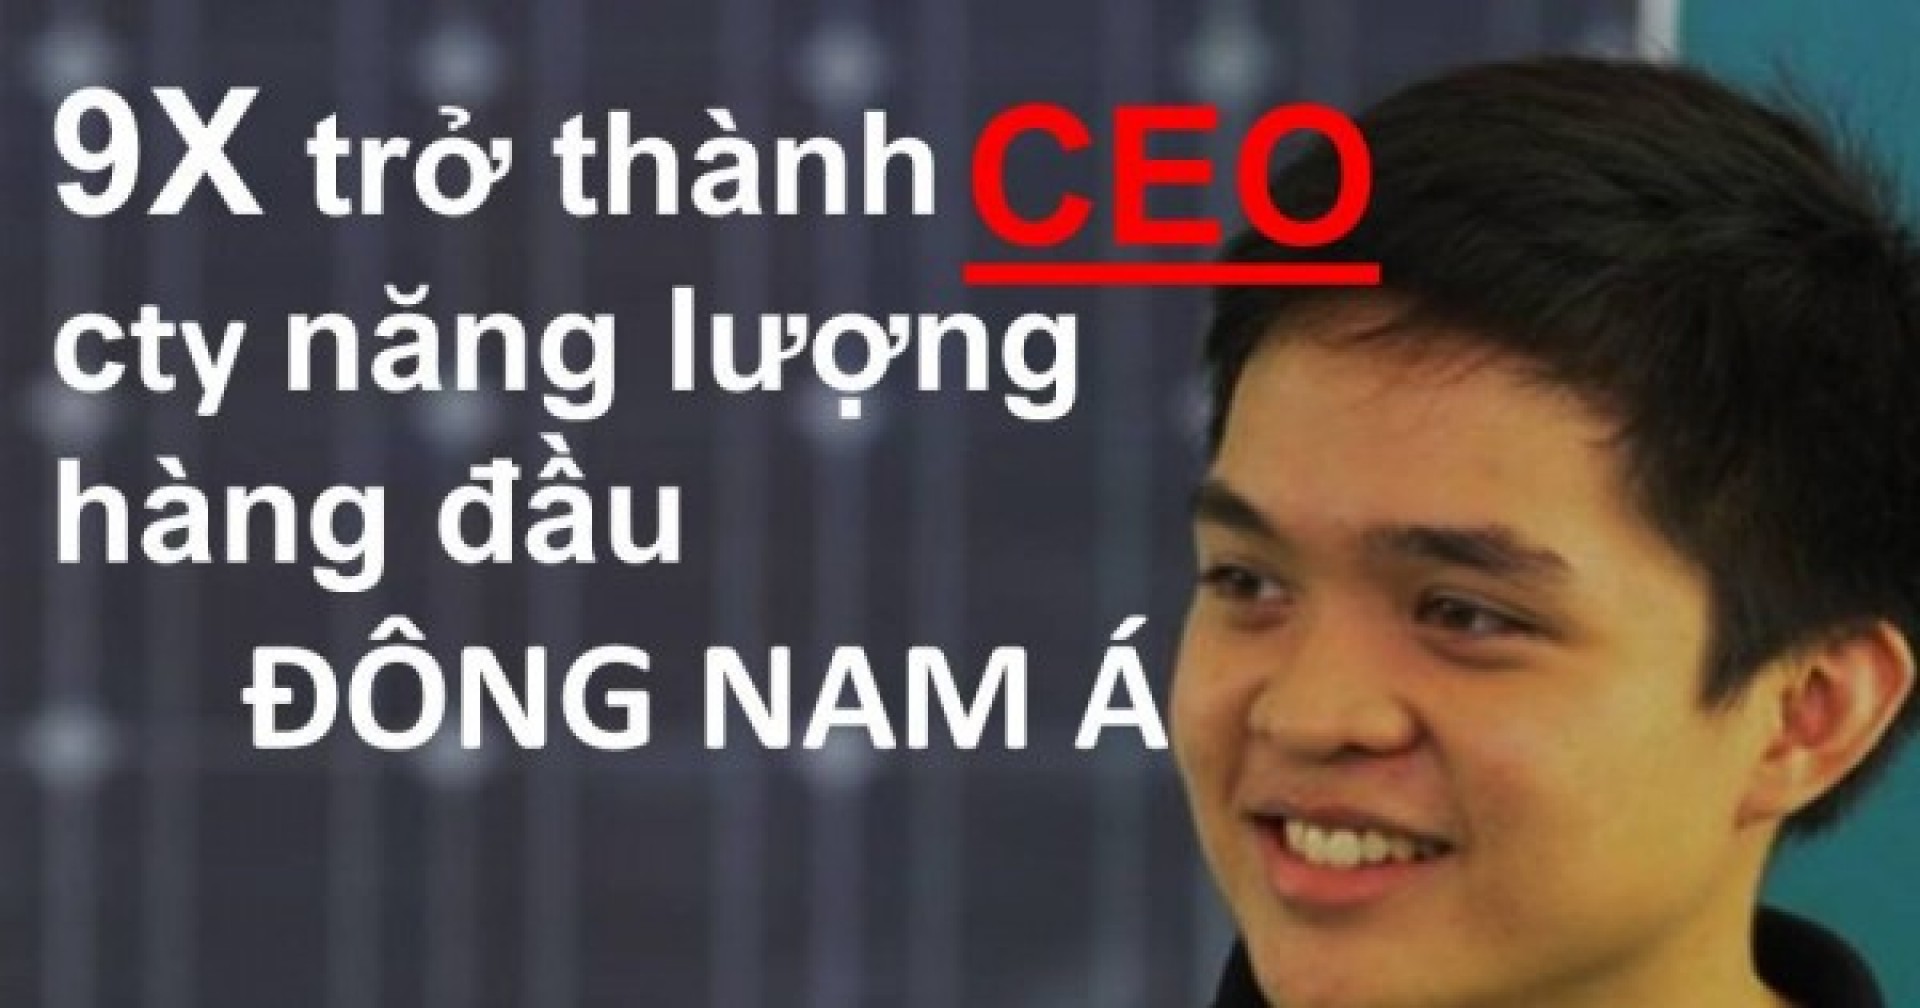 9X trở thành CEO công ty năng lượng hàng đầu Đông Nam Á